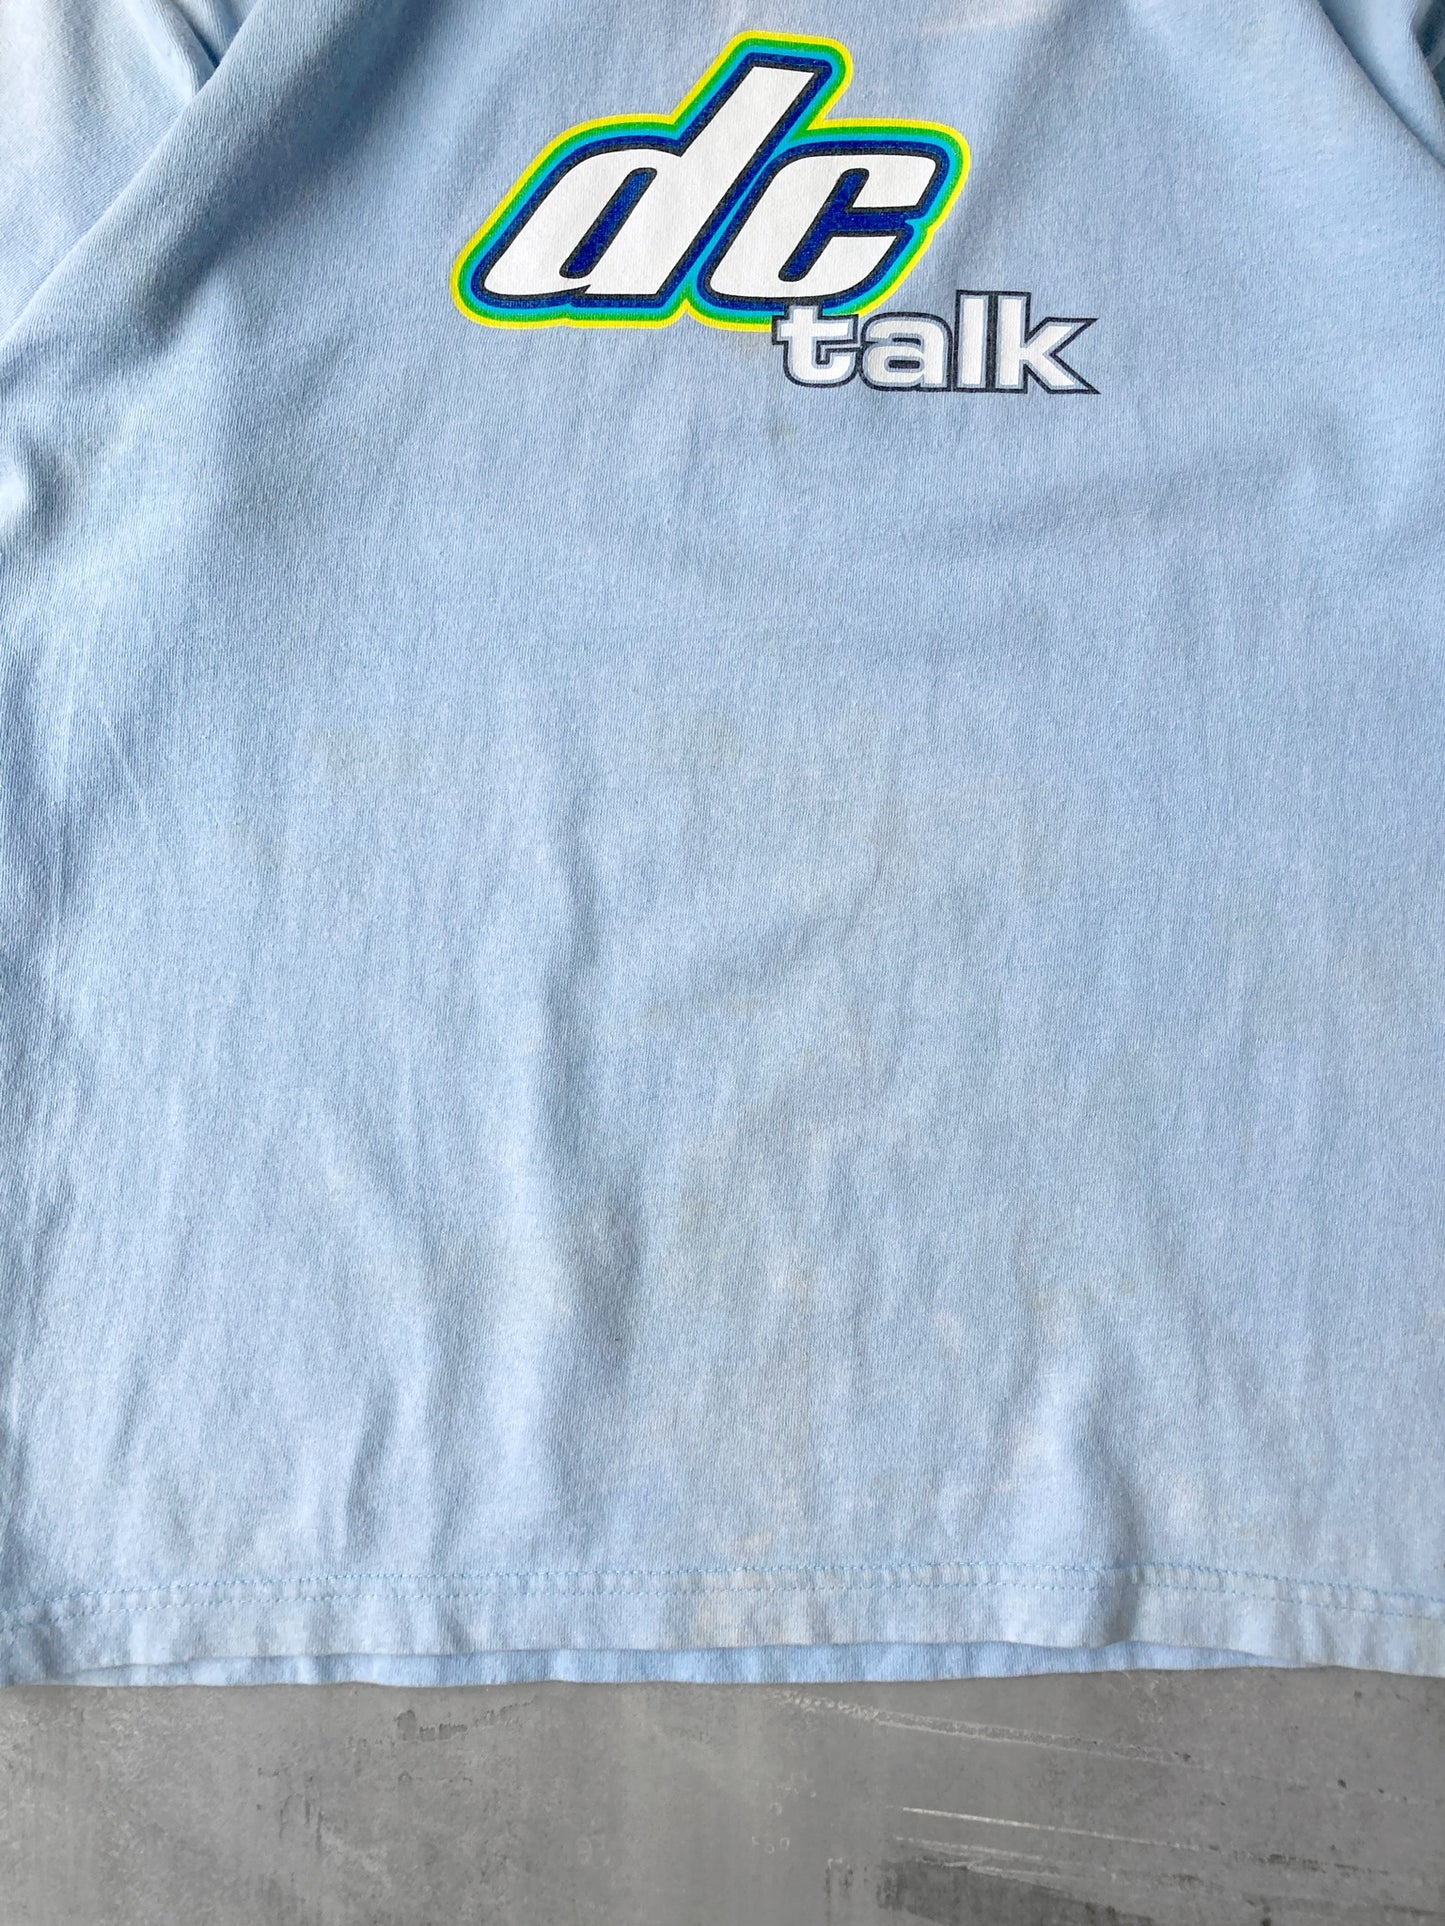 DC Talk Tour T-Shirt '98 - Medium